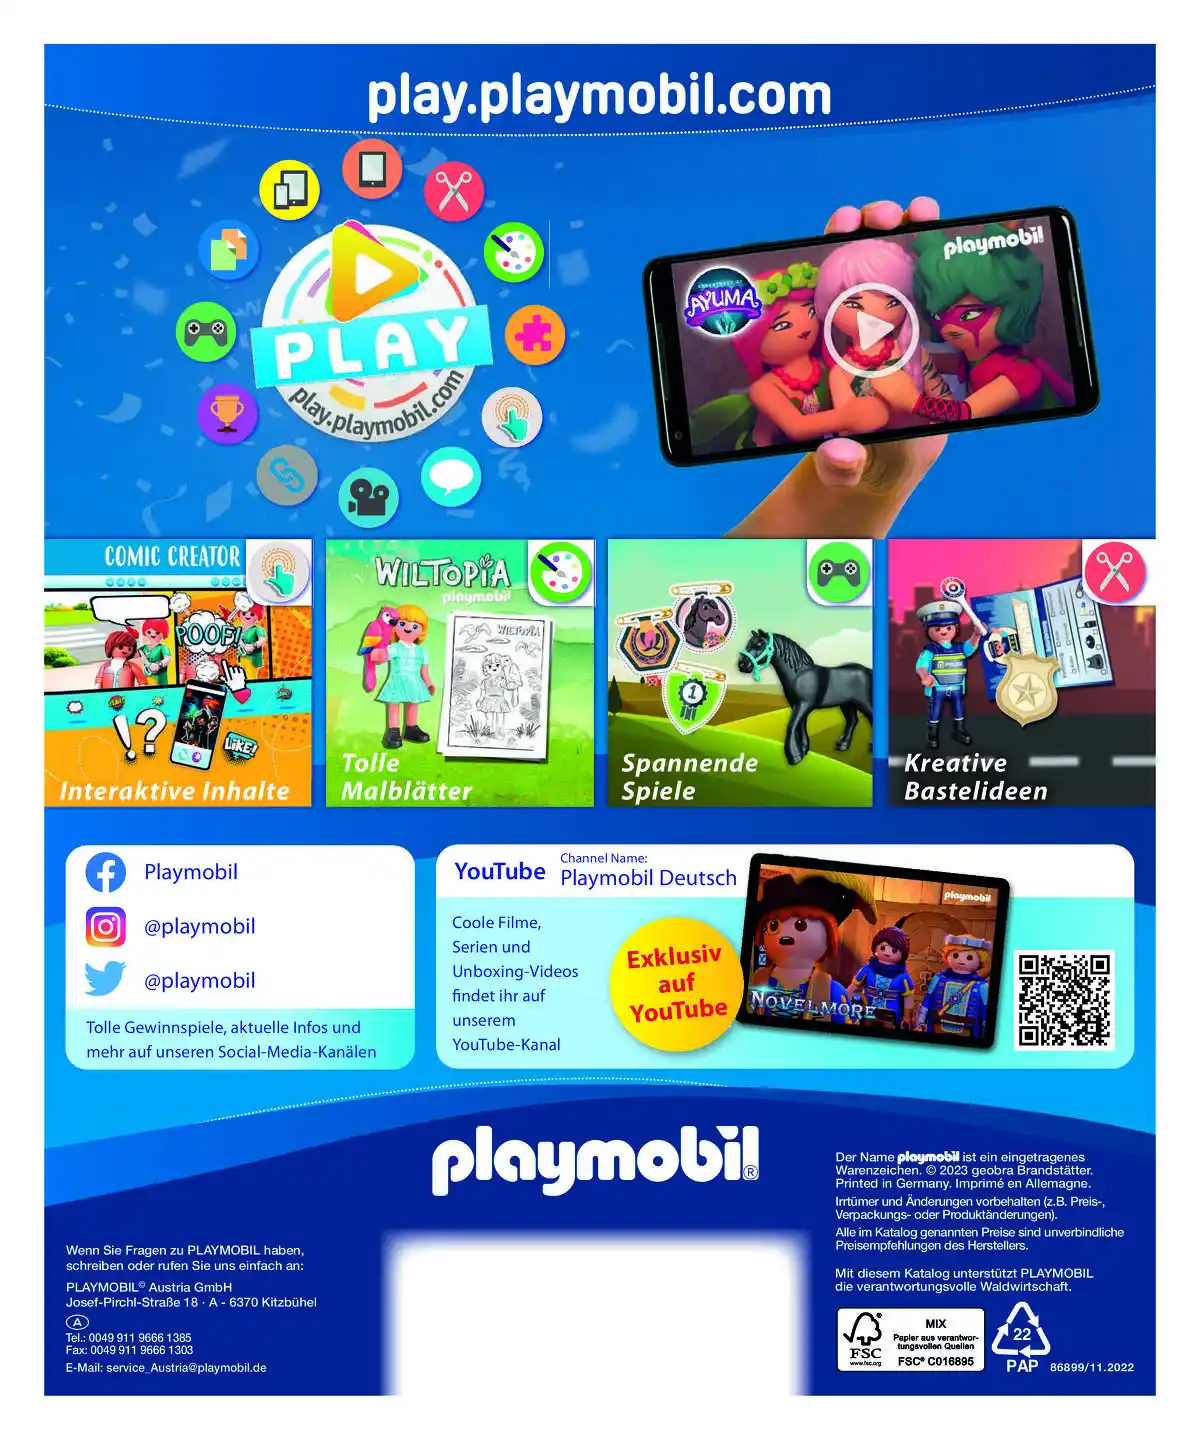 playmobil_at